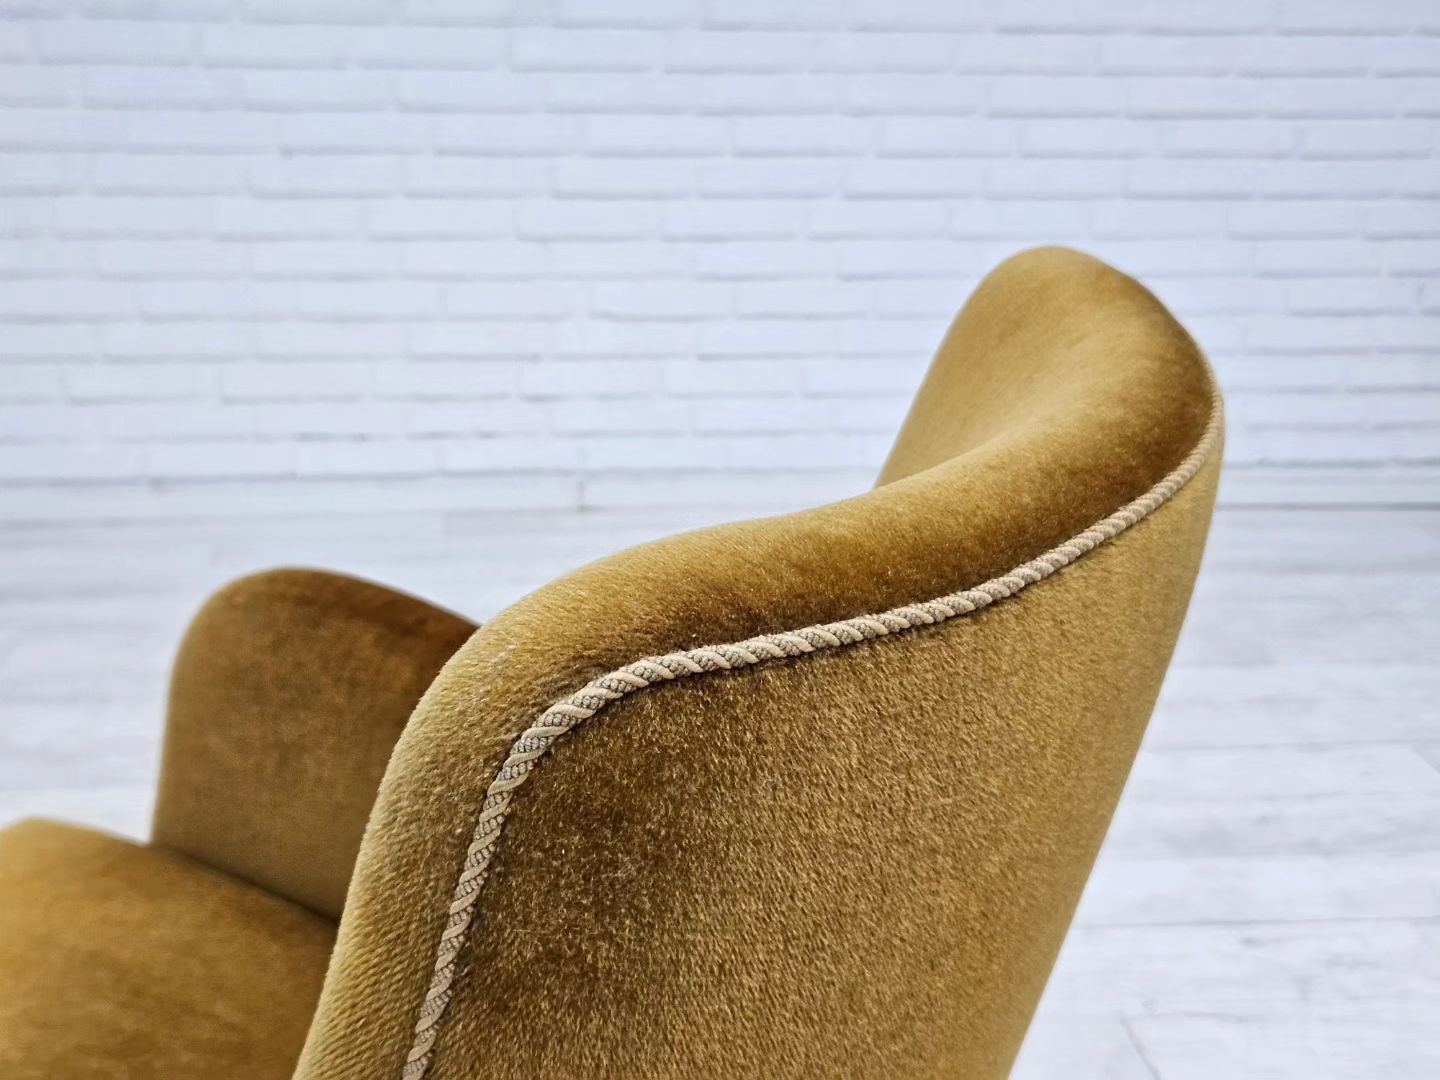 1960s, Danish armchair, original upholstery, light green velour.